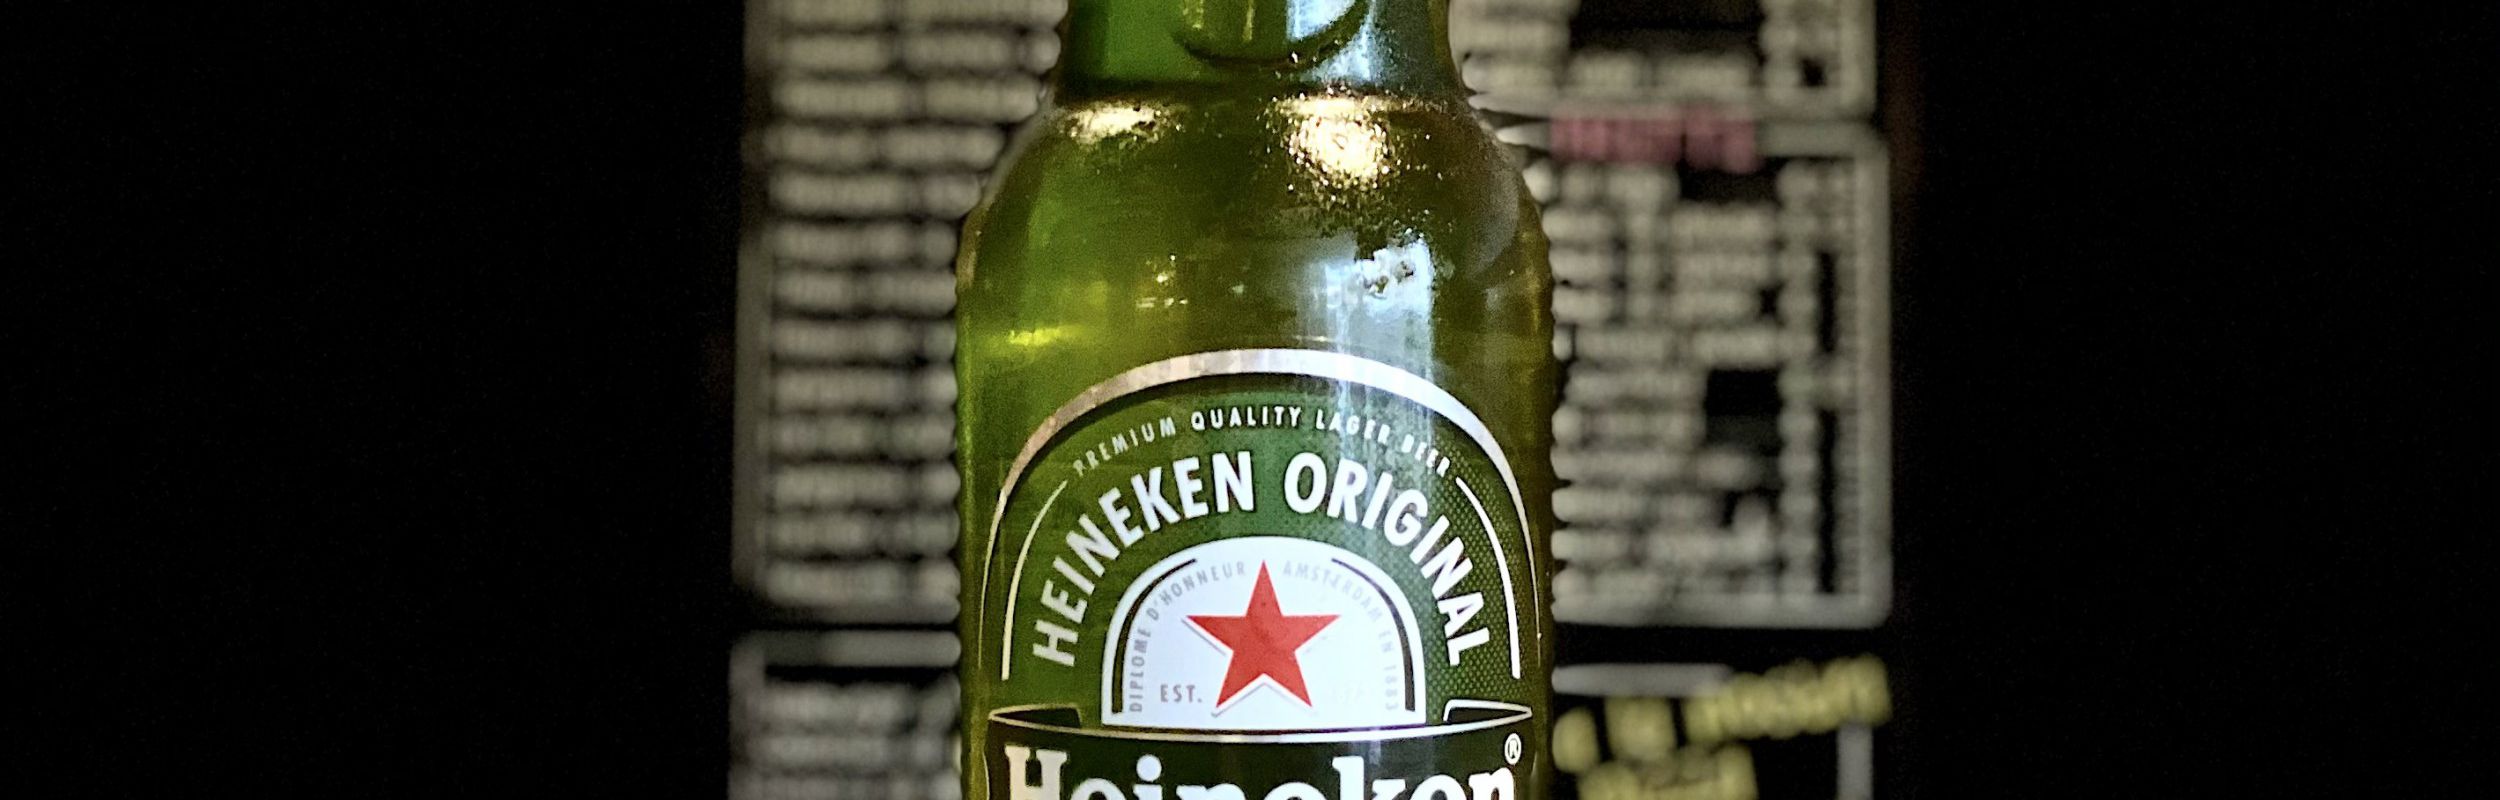 Heineken 66 cl OMAGGIO - Aggiungi quest'articolo al tuo ordine e inserisci il codice HEINEKEN66 nel campo coupon al checkout.
Offerta valida per ordini...